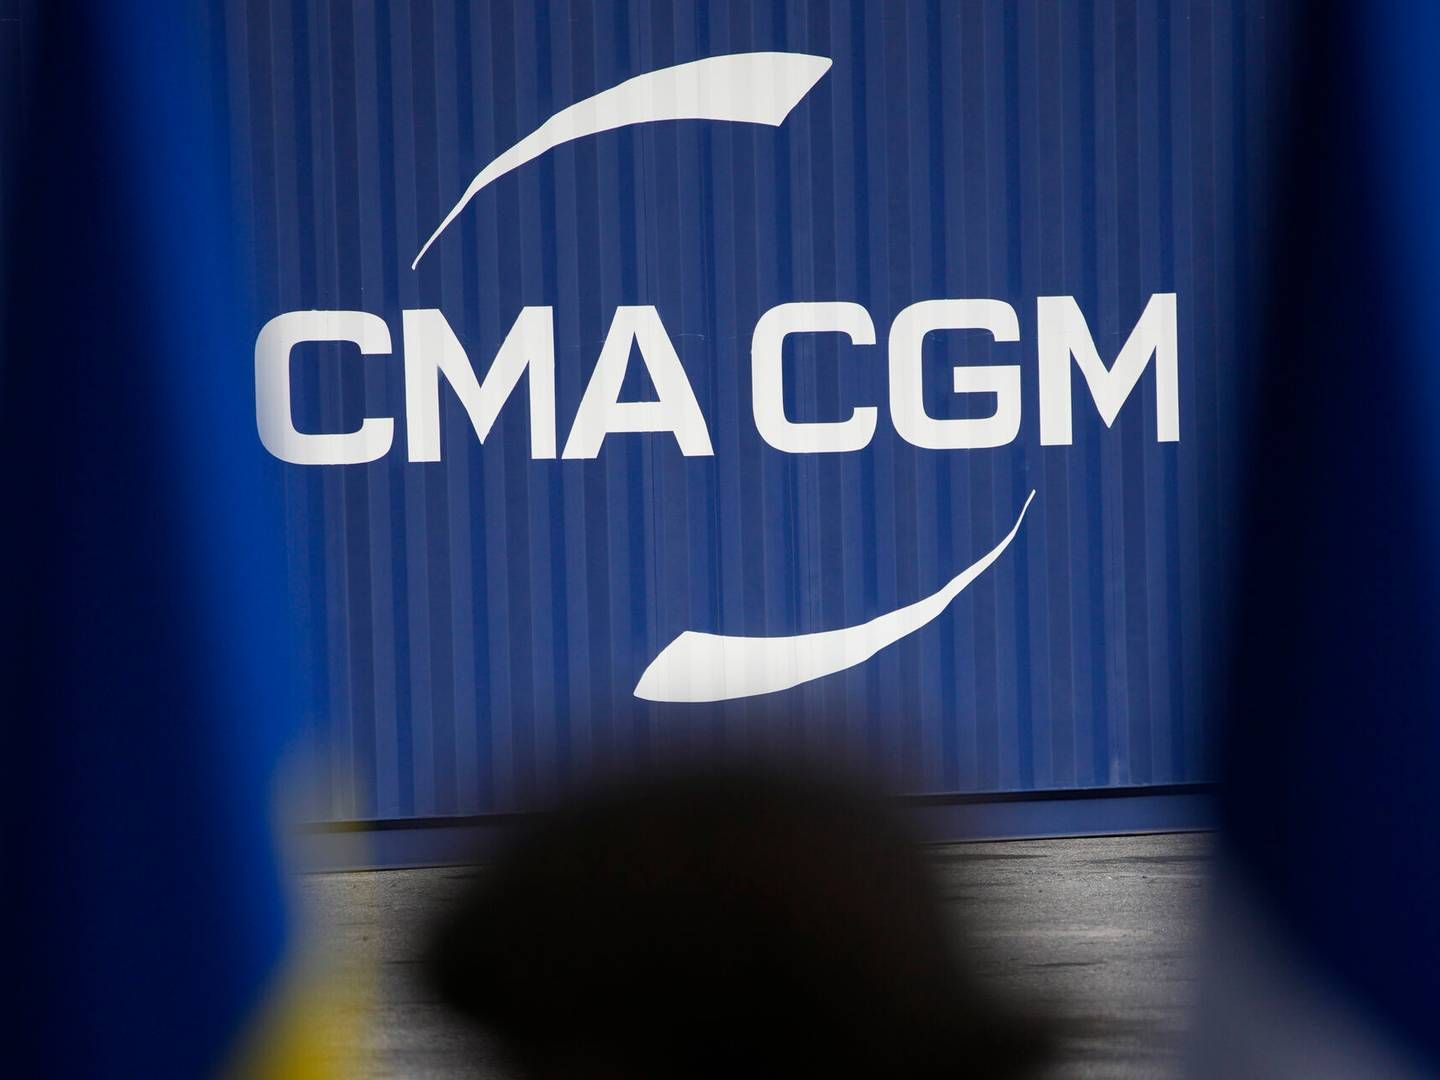 Det er rederiet CMA CGM, der ejer Ceva Logistics, der nu har erhvervet sig et britisk logistikselskab. | Foto: Daniel Cole/AP/Ritzau Scanpix